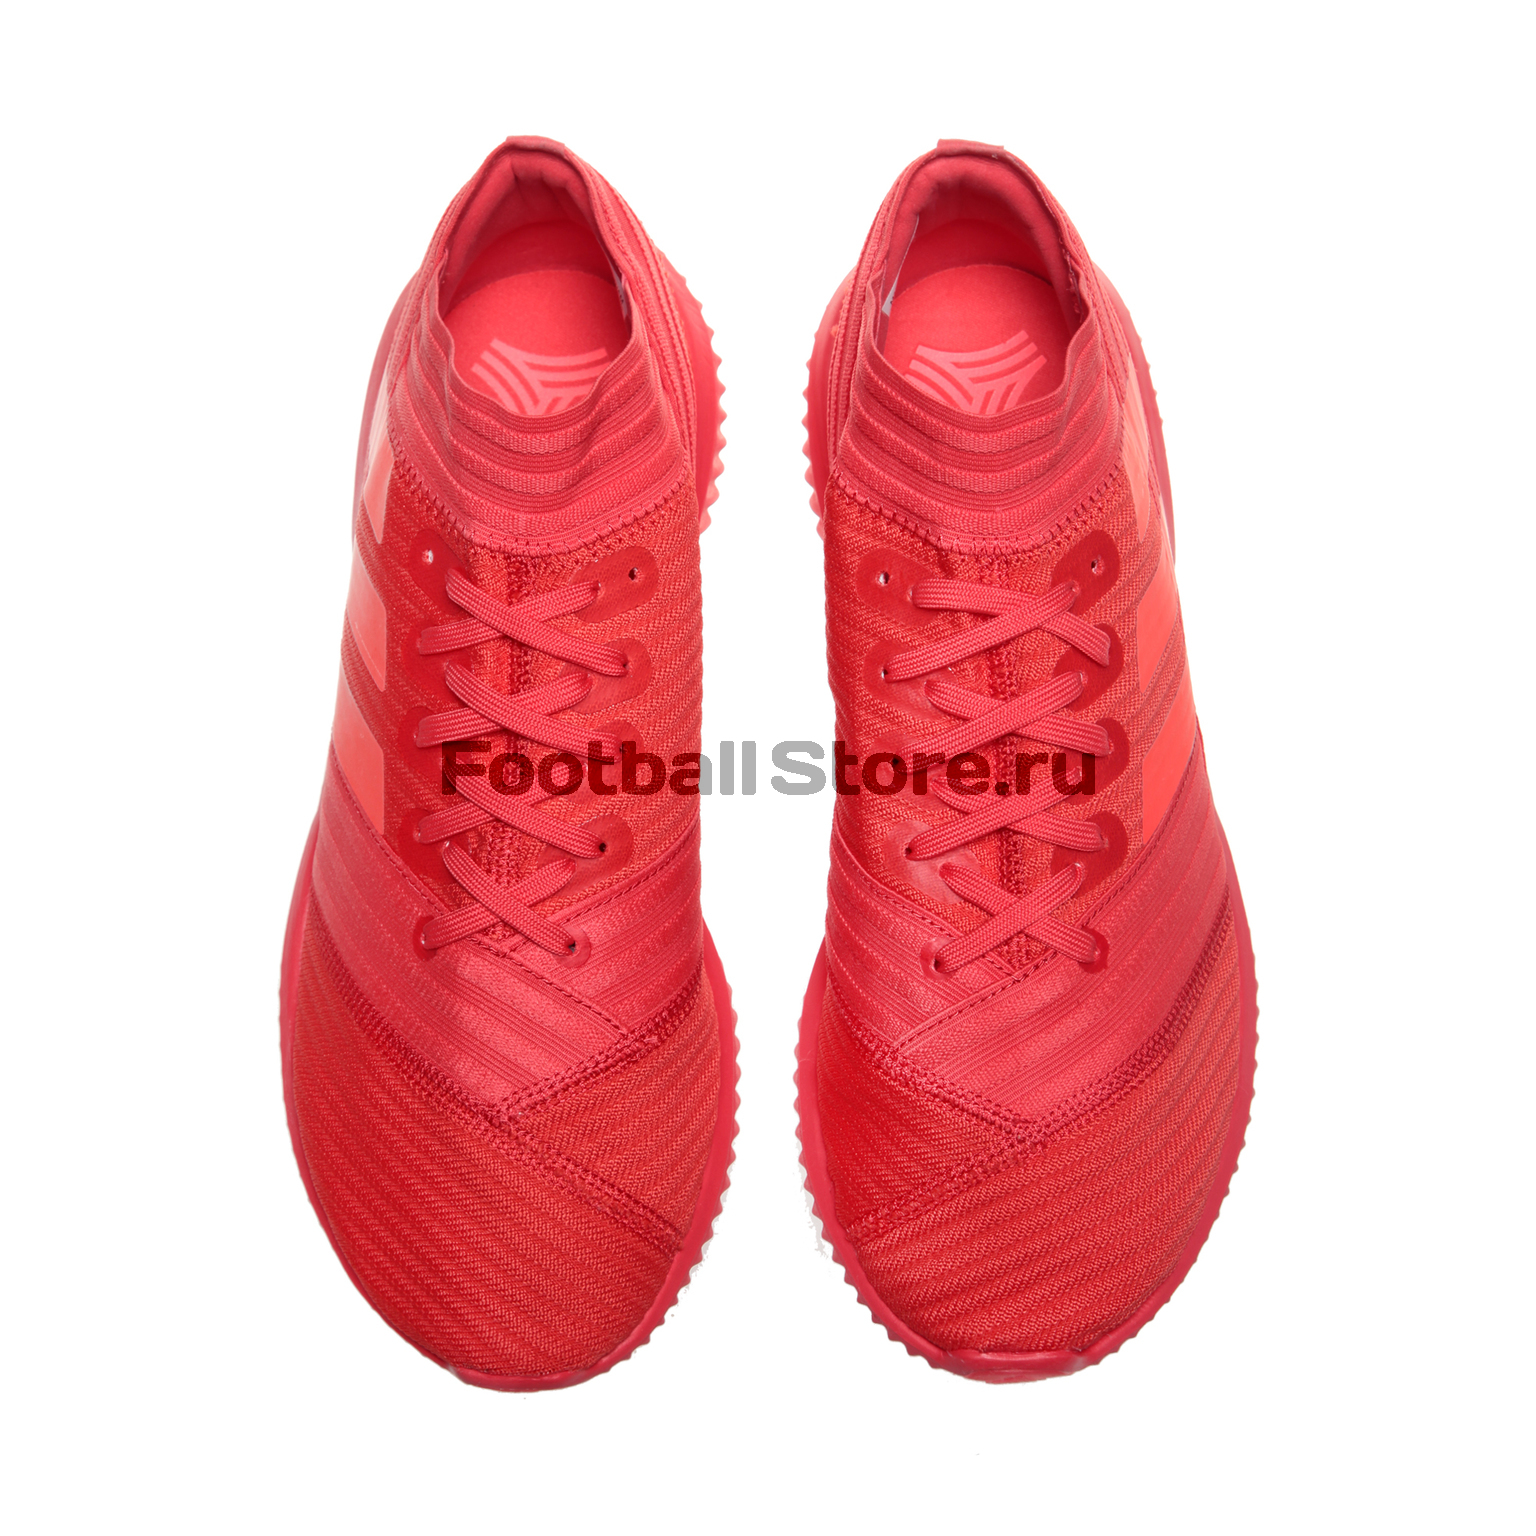 Футбольная обувь Adidas Nemeziz Tango 17.1 TR CP9116